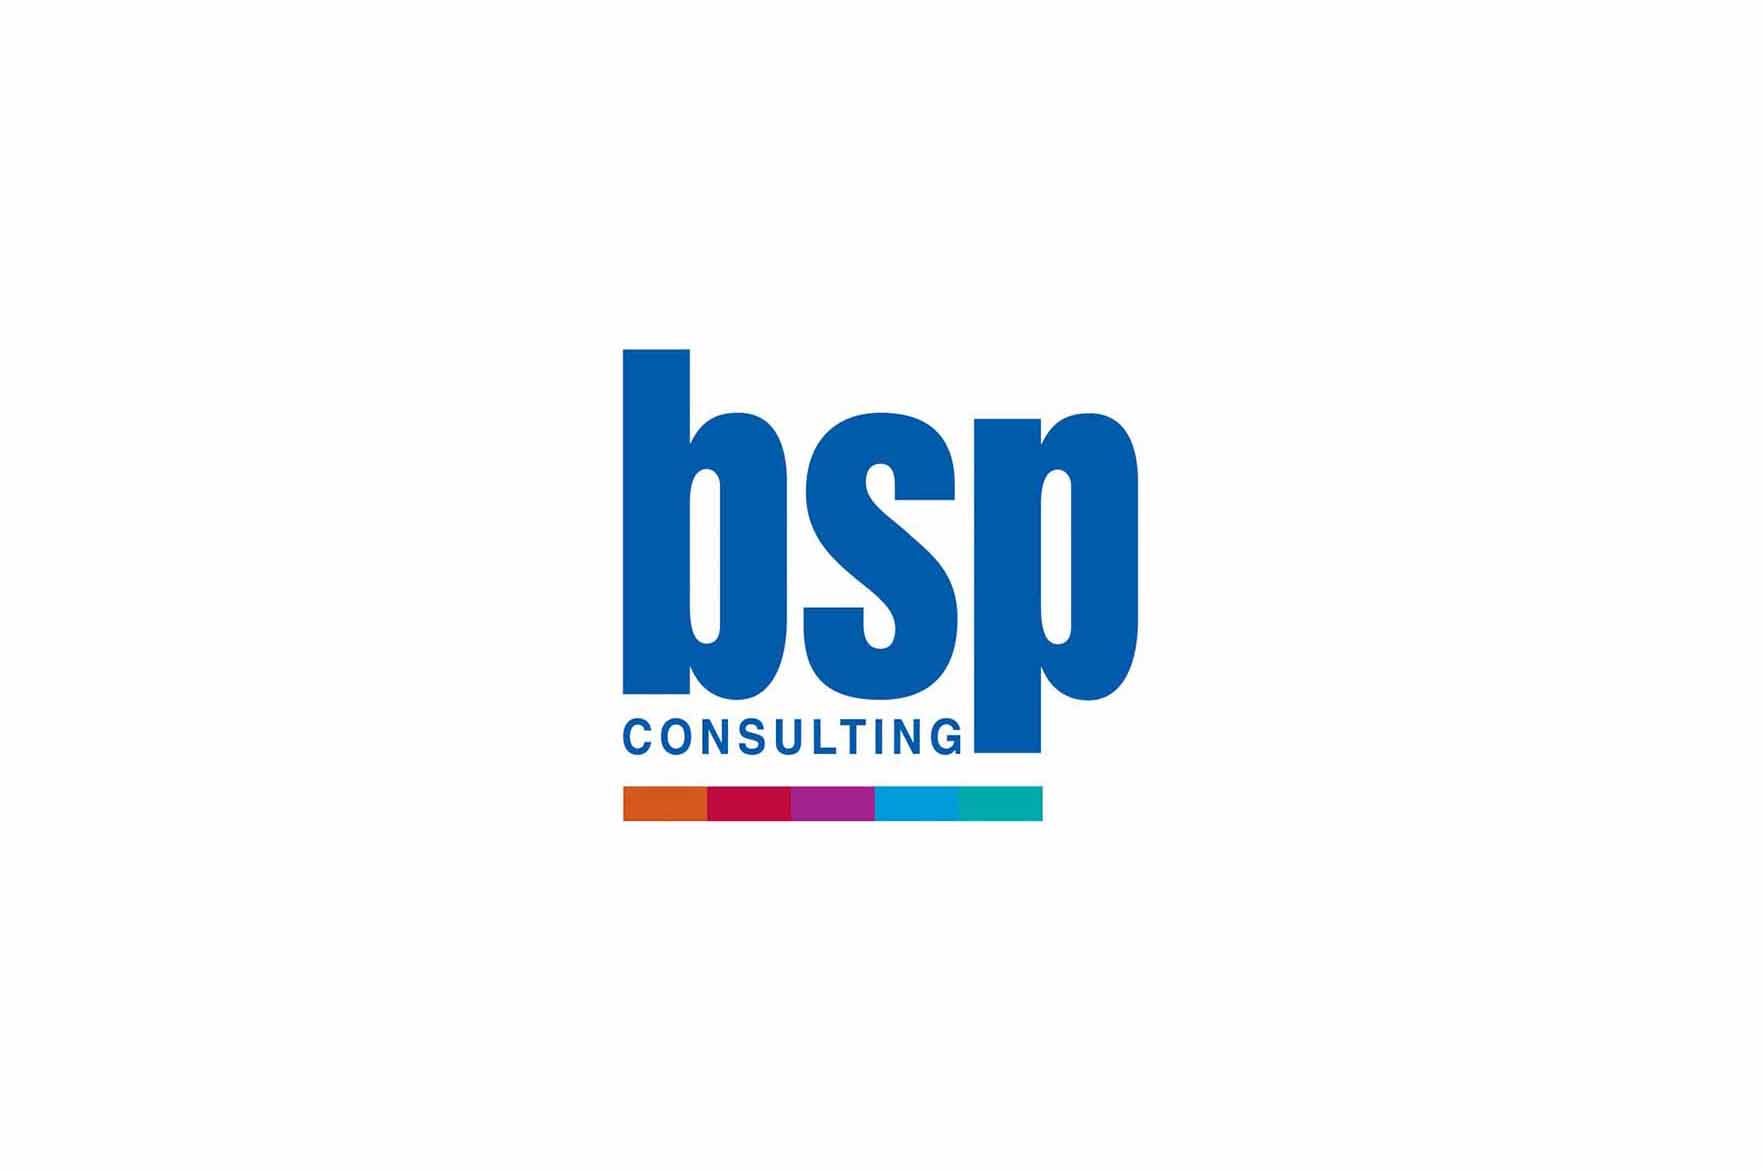 BSP Consulting logo